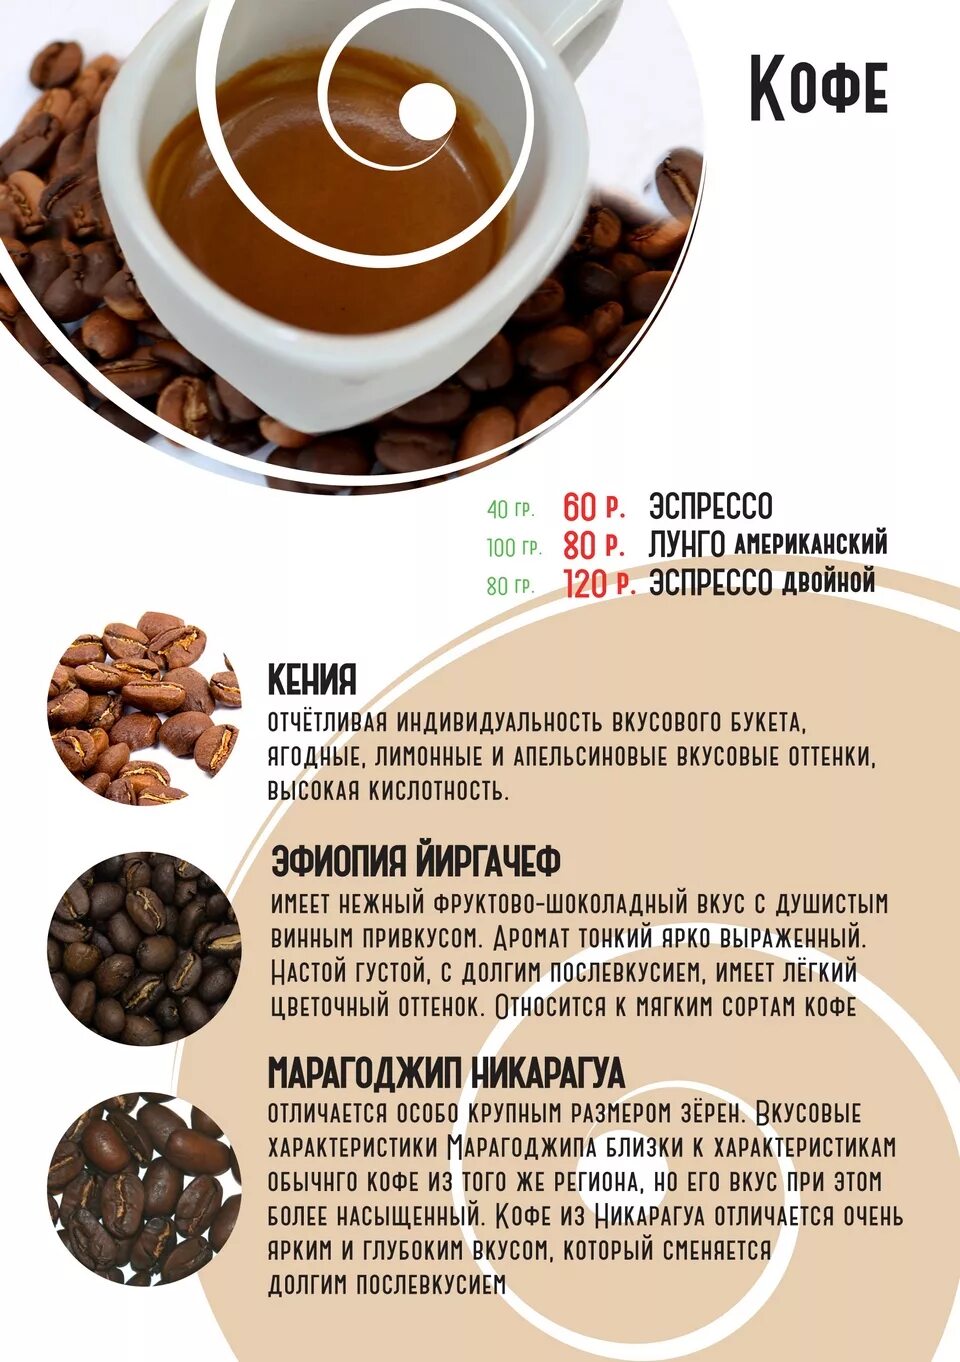 Популярные напитки из кофе. Карта напитков кофе. Рецепты кофе. Грамм кофе на эспрессо.